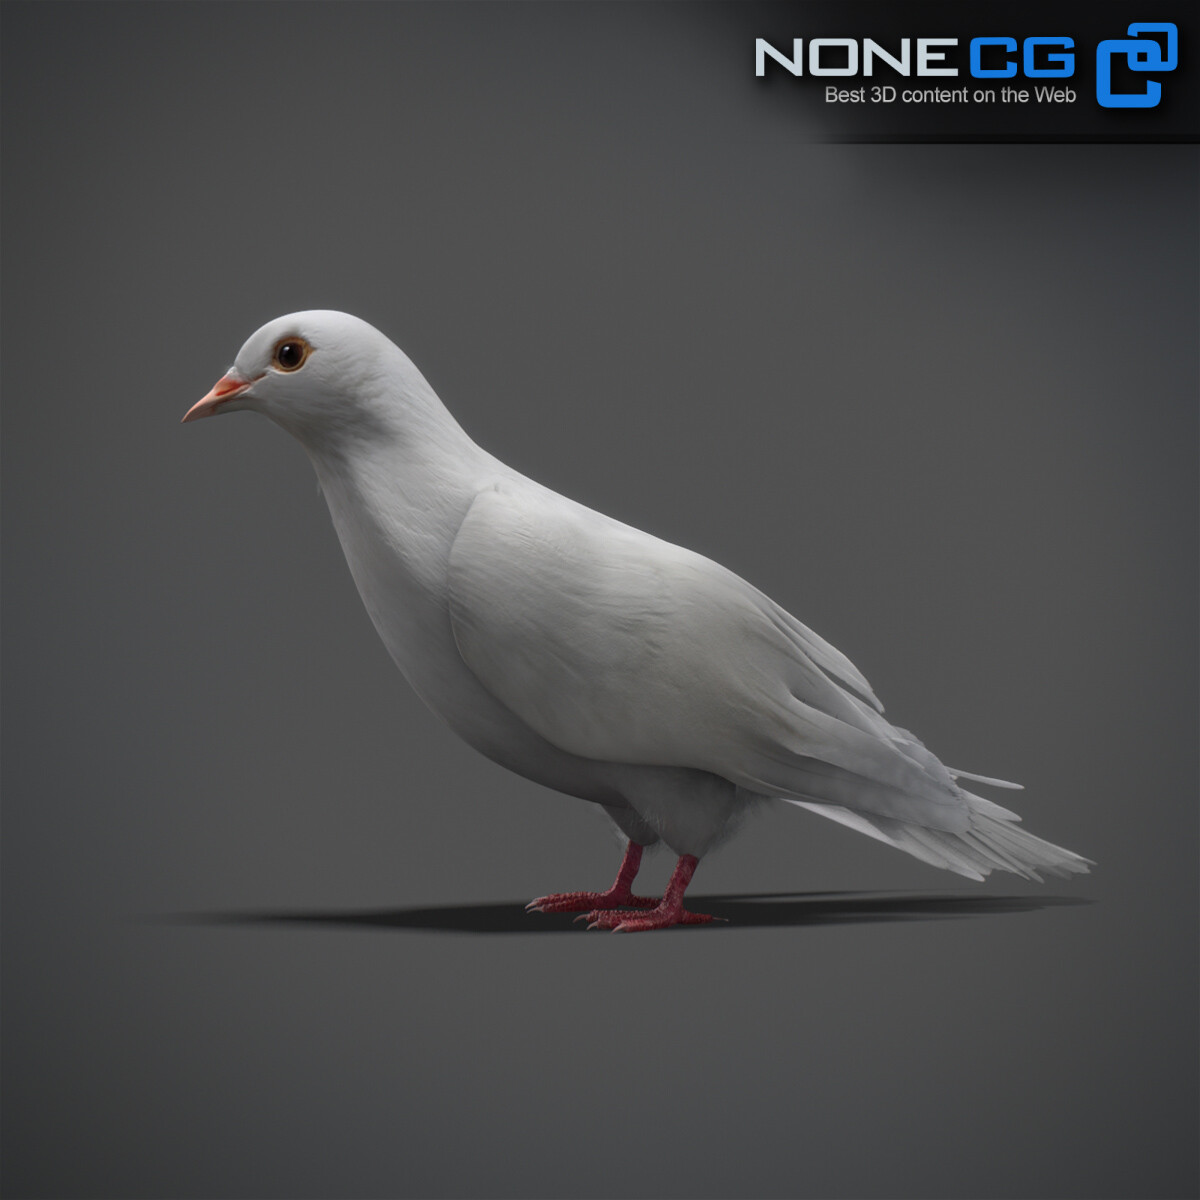 3D White Dove